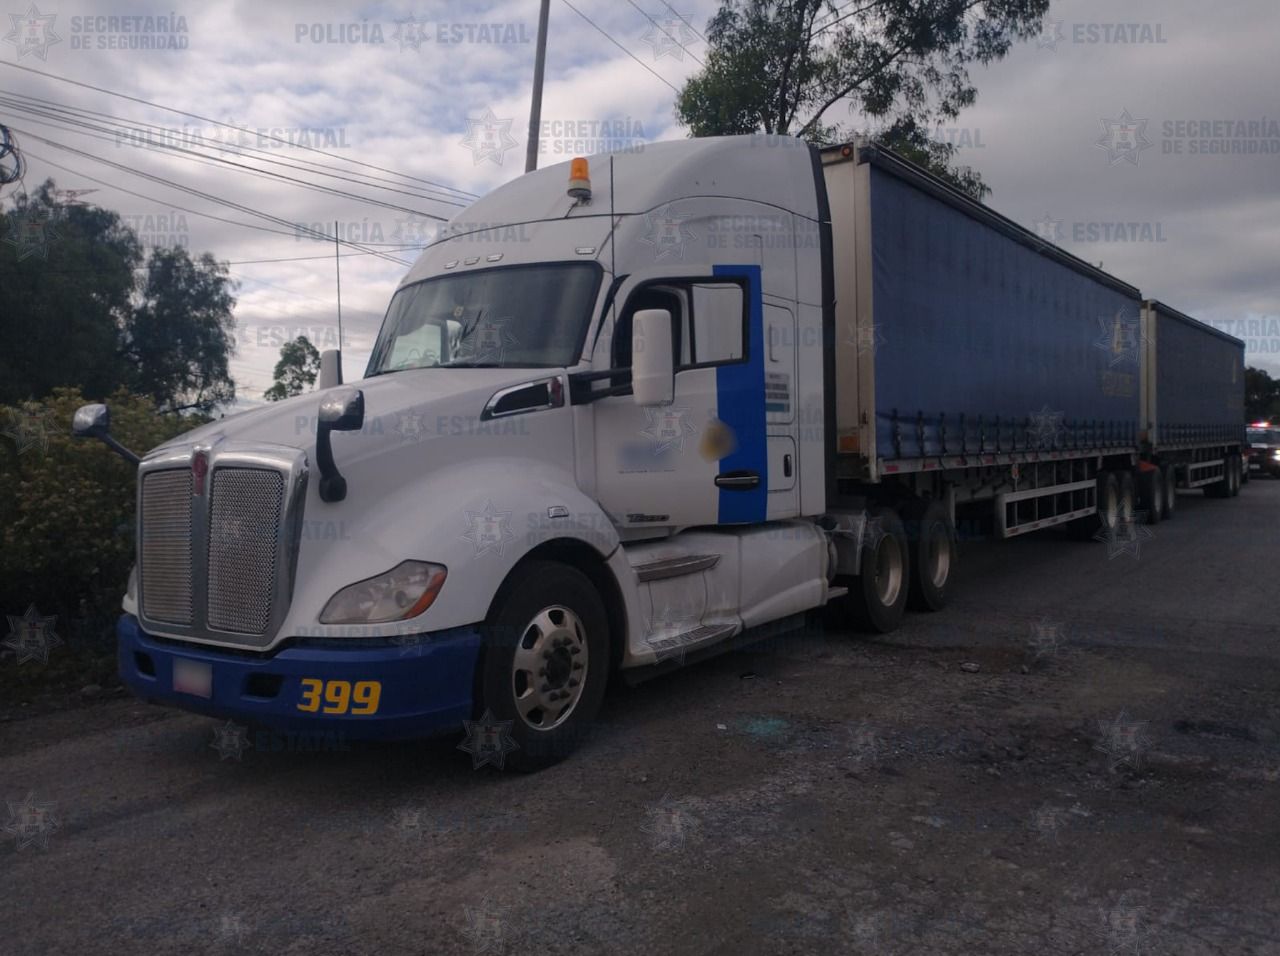 Huehuetoca, Estado de México, 26 de agosto de 2021

 
#Recuperan tractocamión reportado como robado con mercancía en Huehuetoca  